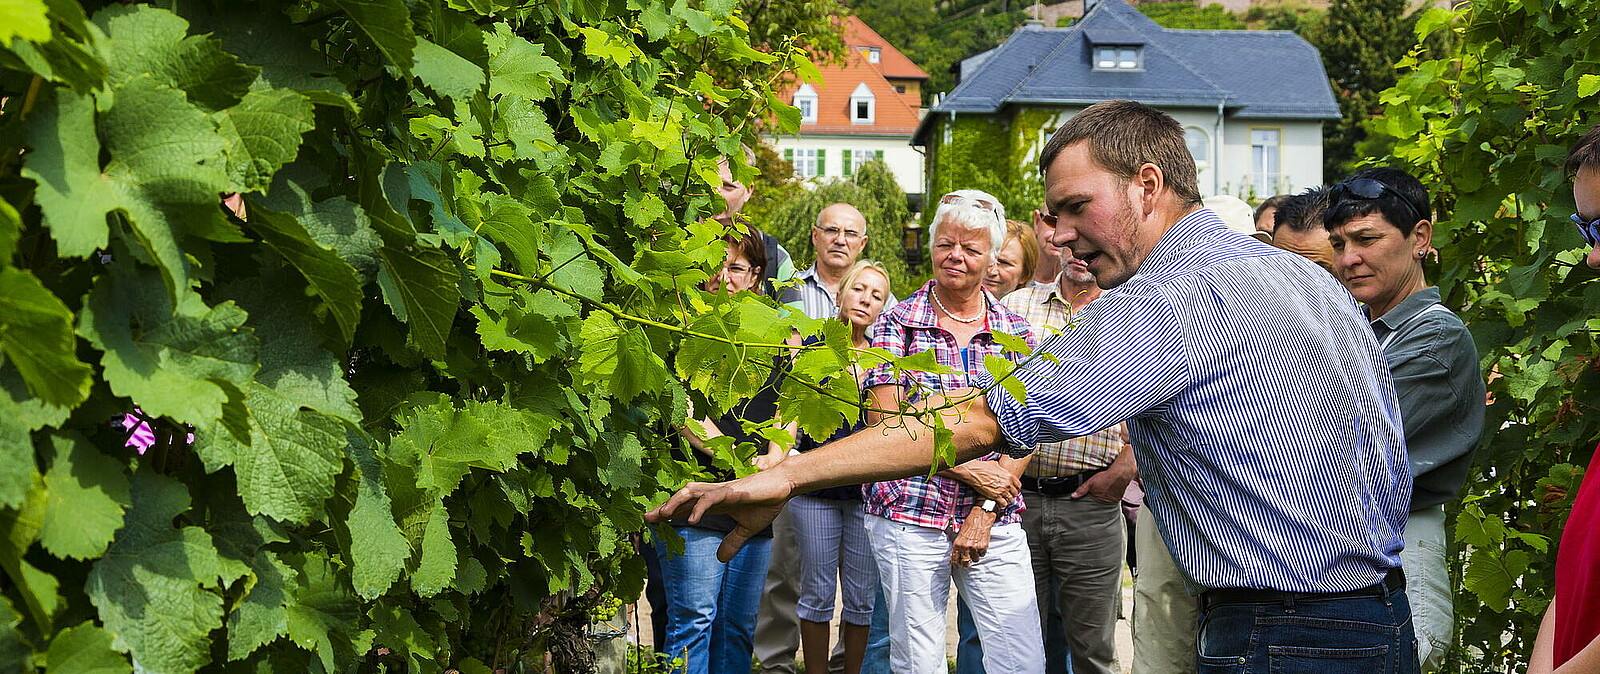 Entdecken Sie die Radebeuler Weinregion und lernen Sie die sächsischen Weine genussvoll kennen. Unsere Winzer plaudern gern aus ihrem Nähkästchen und verkosten mit Ihnen ihre eigenen Lieblingsweine.